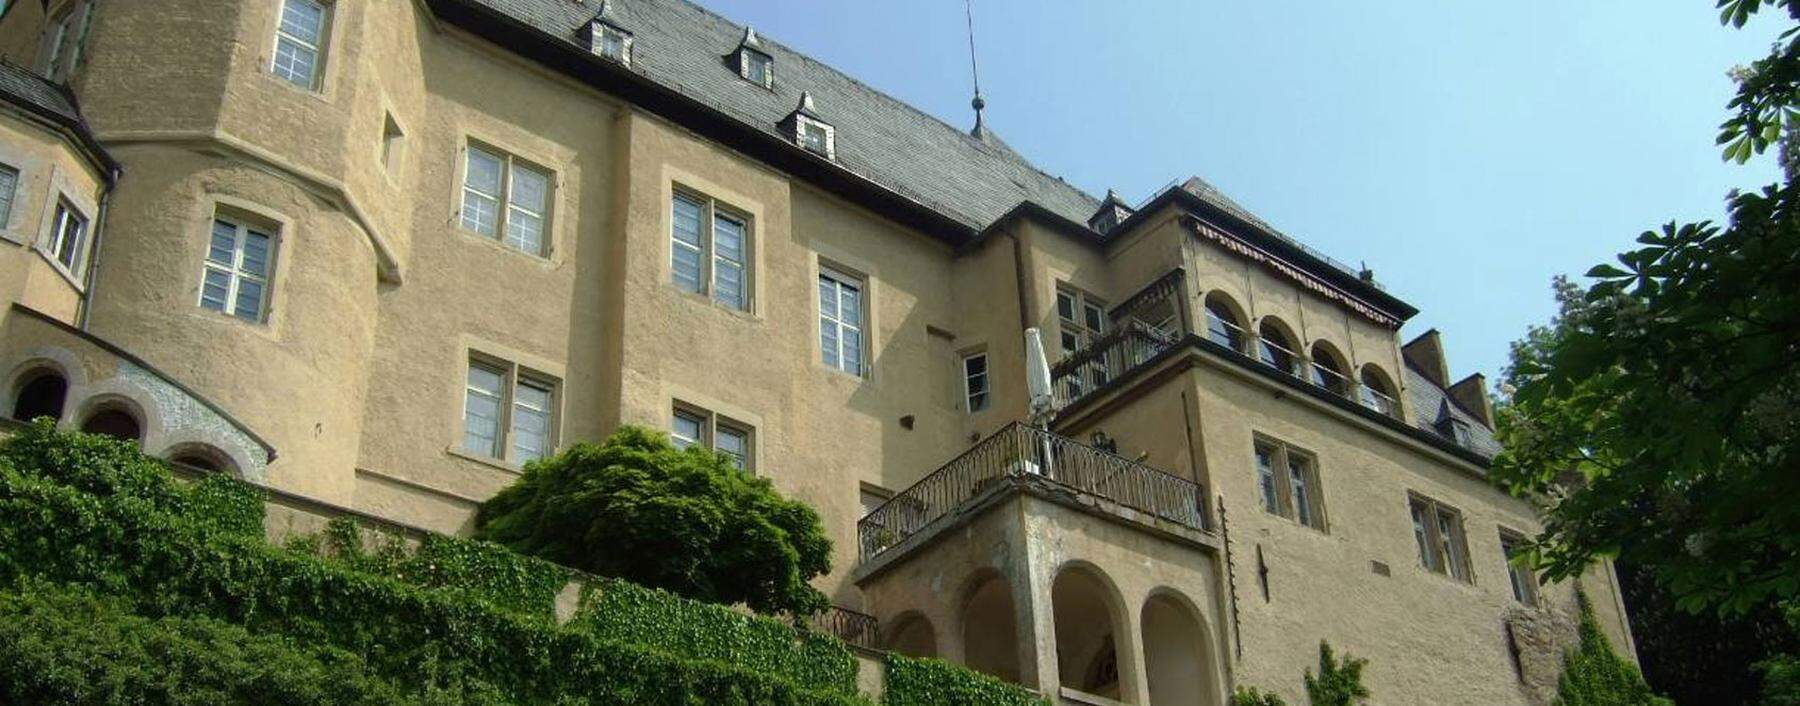 Schloss bei Schweinfurt